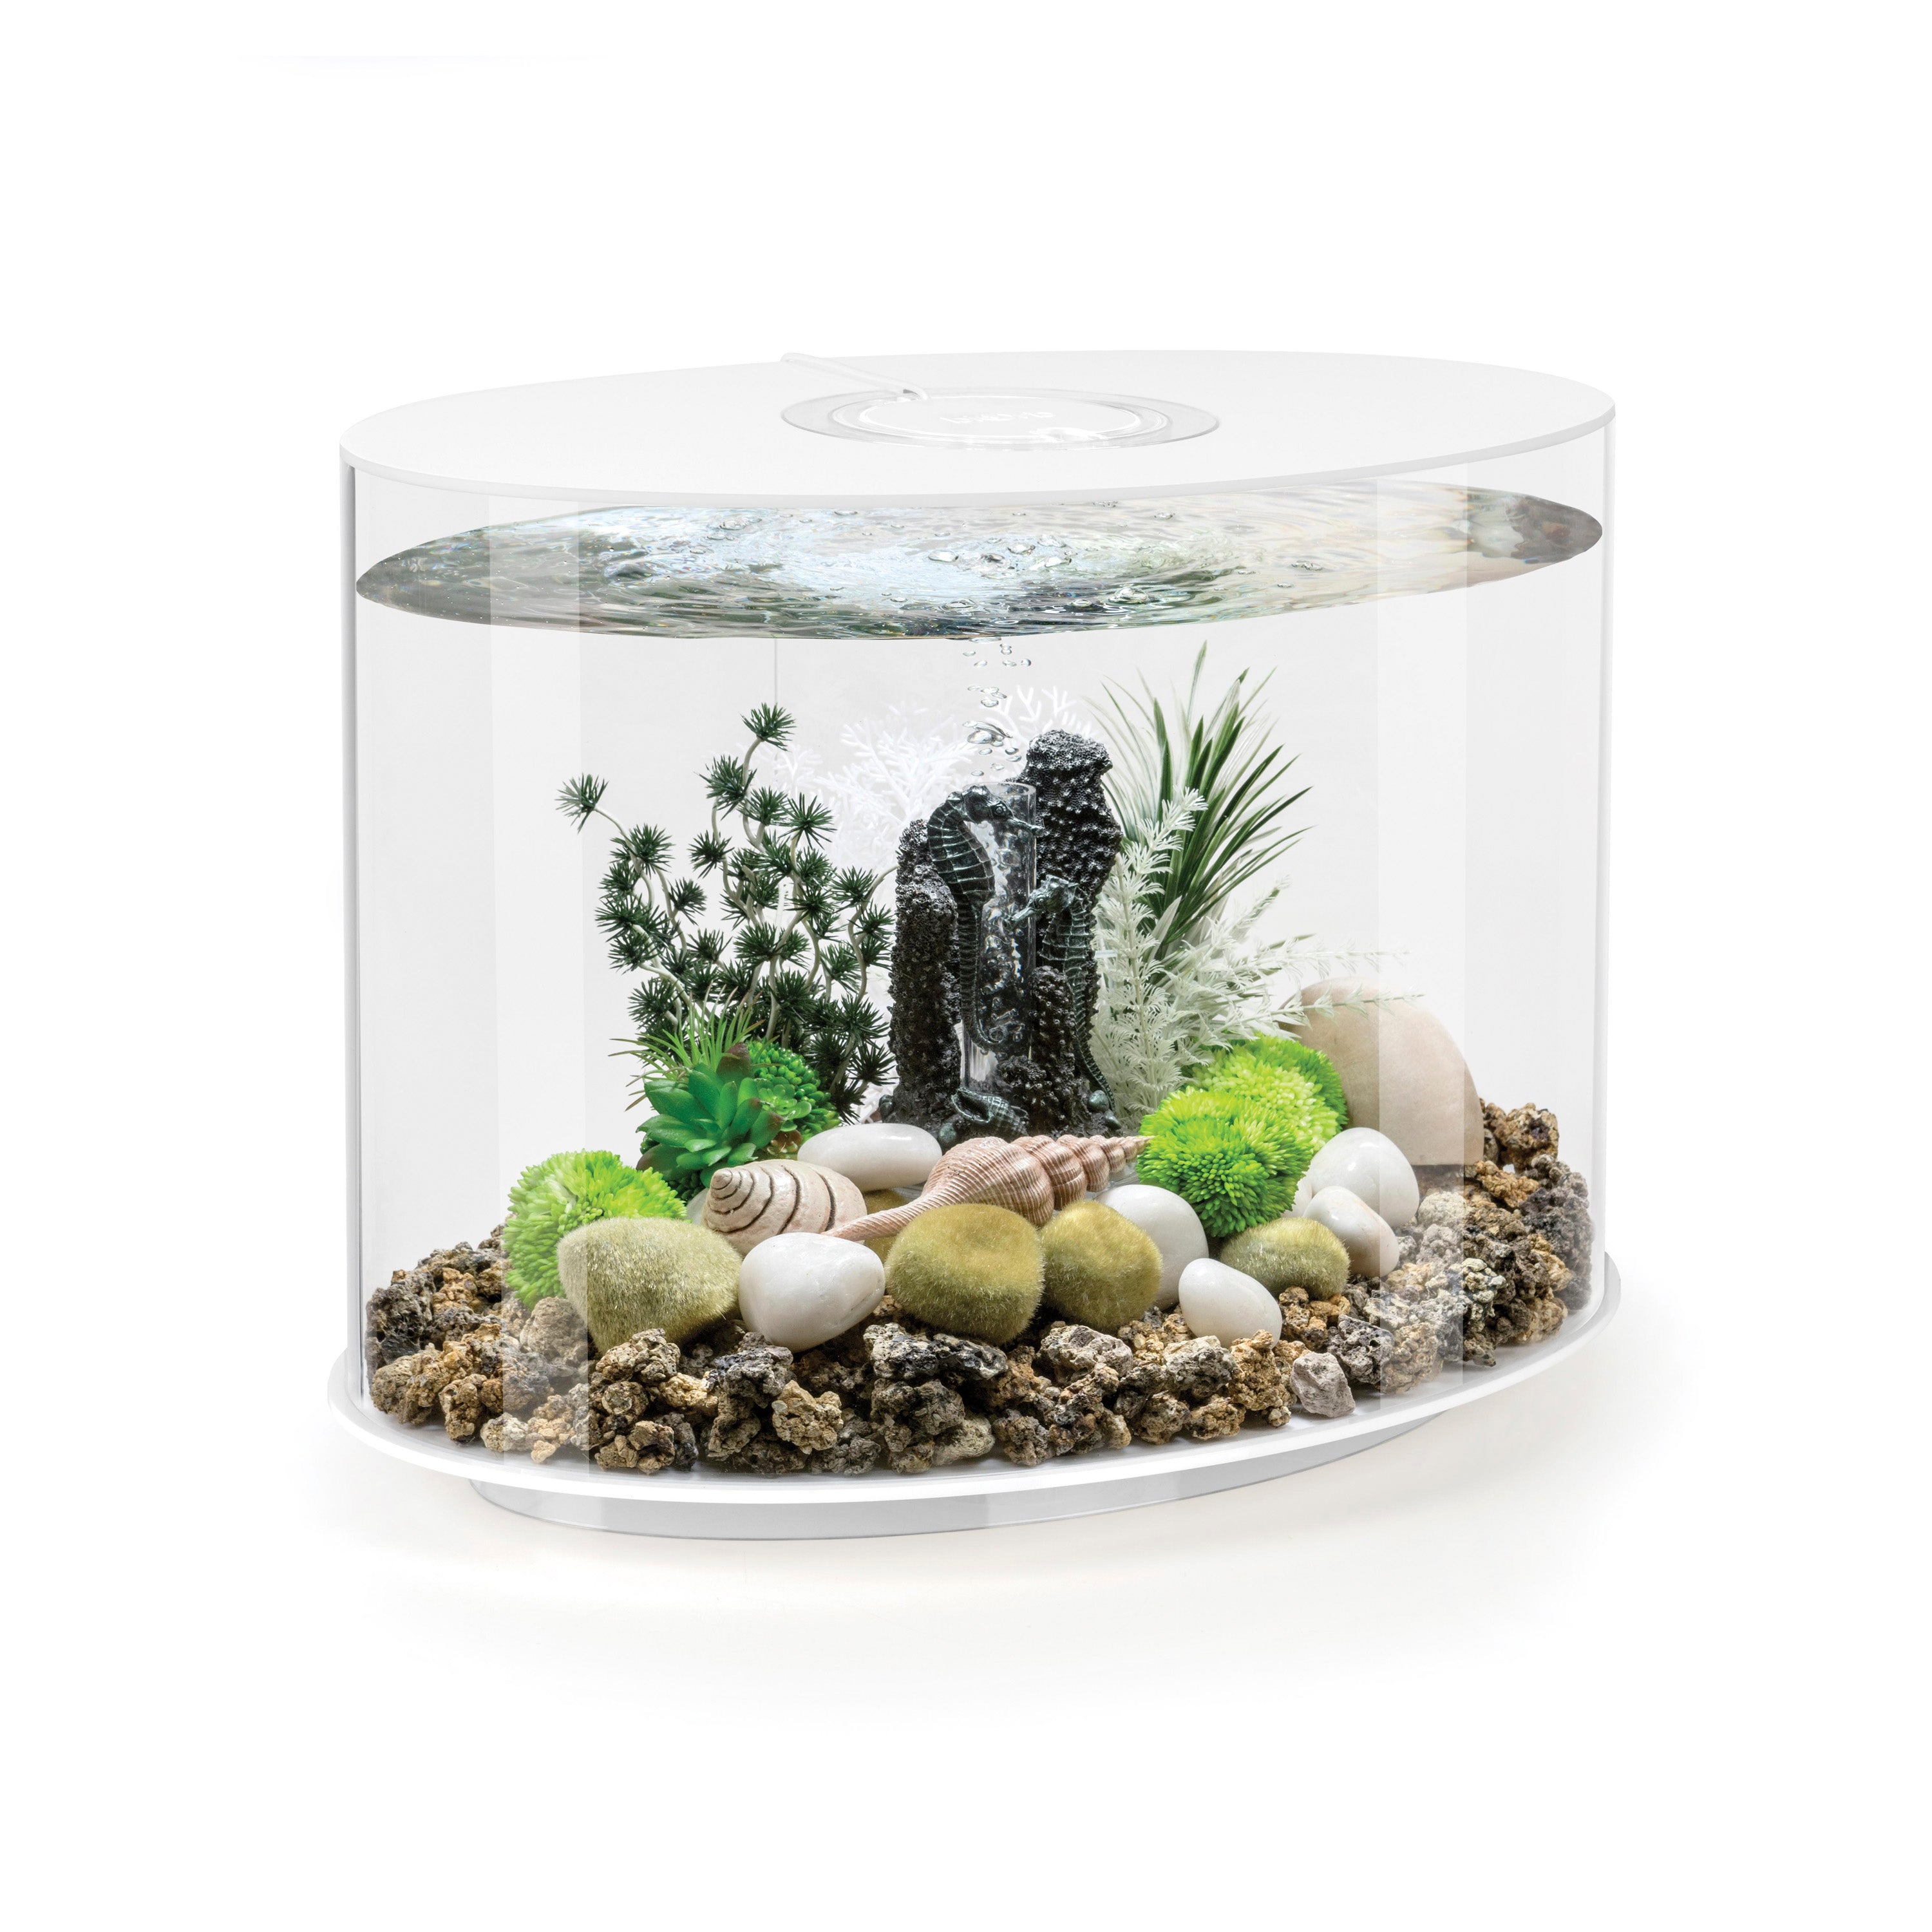 AllPondSolutions LED Light Fish Tank Cabinet Kit - White 70L - 57cm